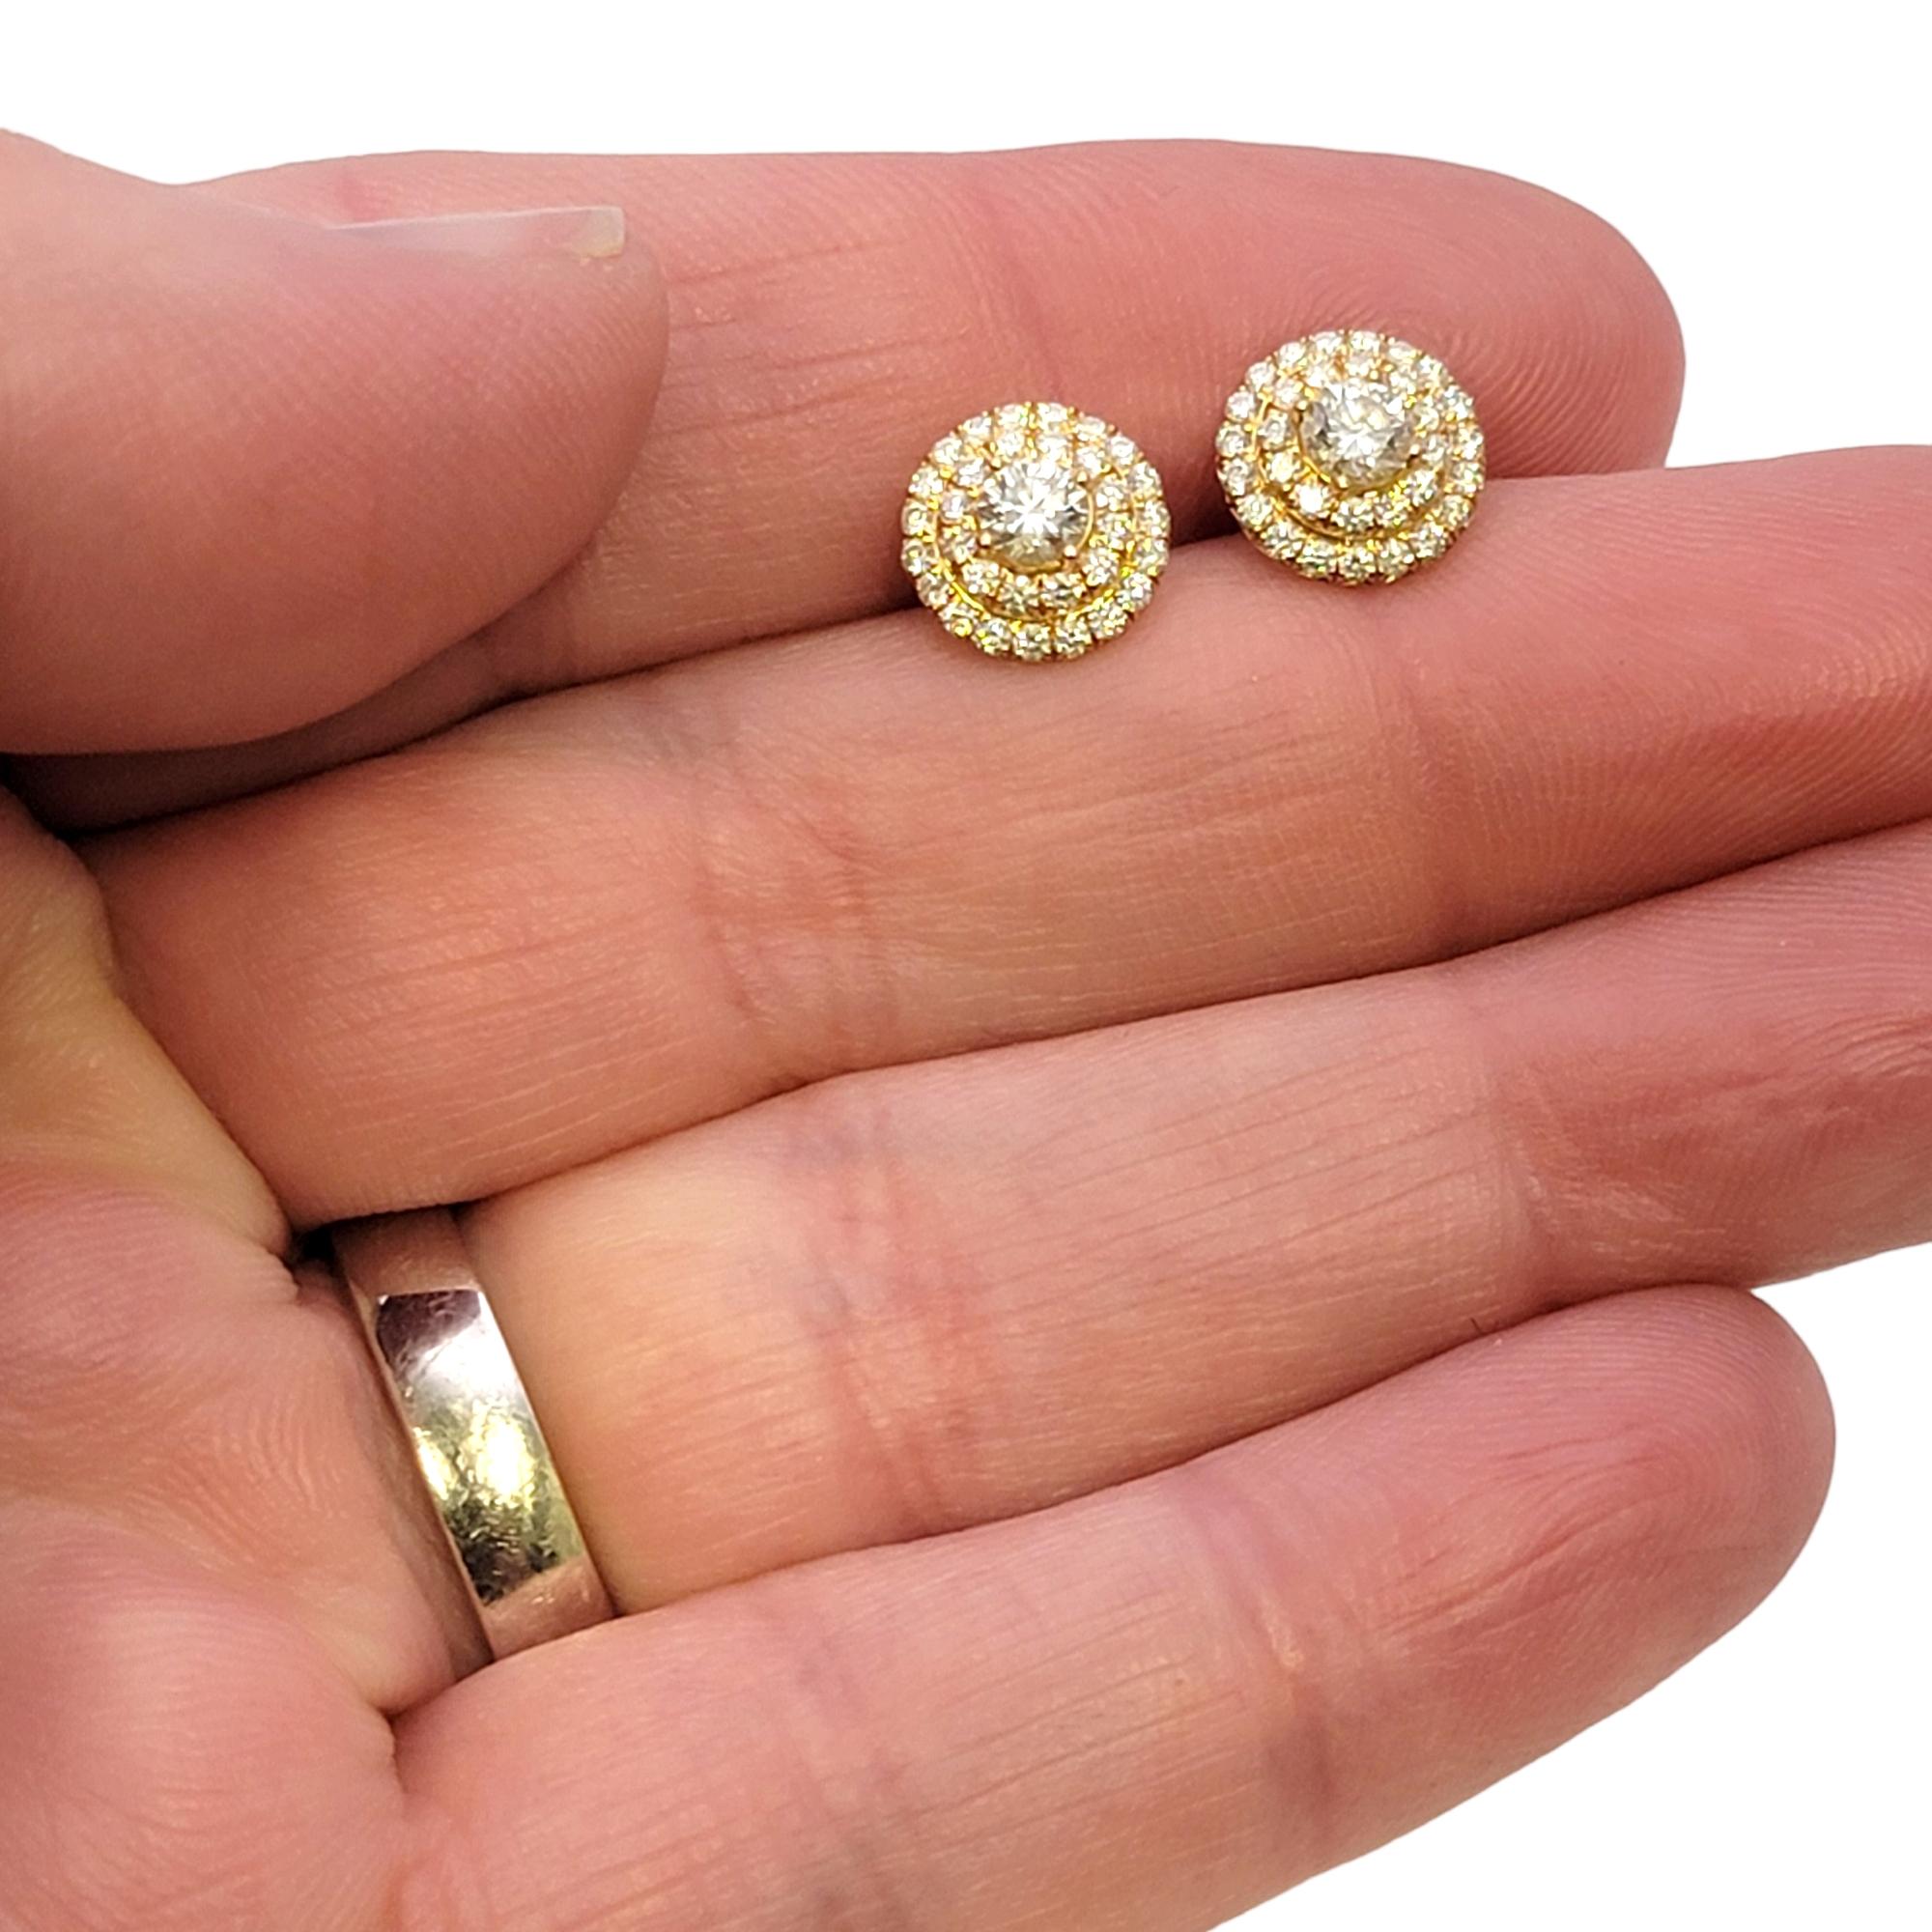 Tiffany & Co. Soleste Diamond Double Halo Stud Earrings in 18 Karat Yellow Gold  1